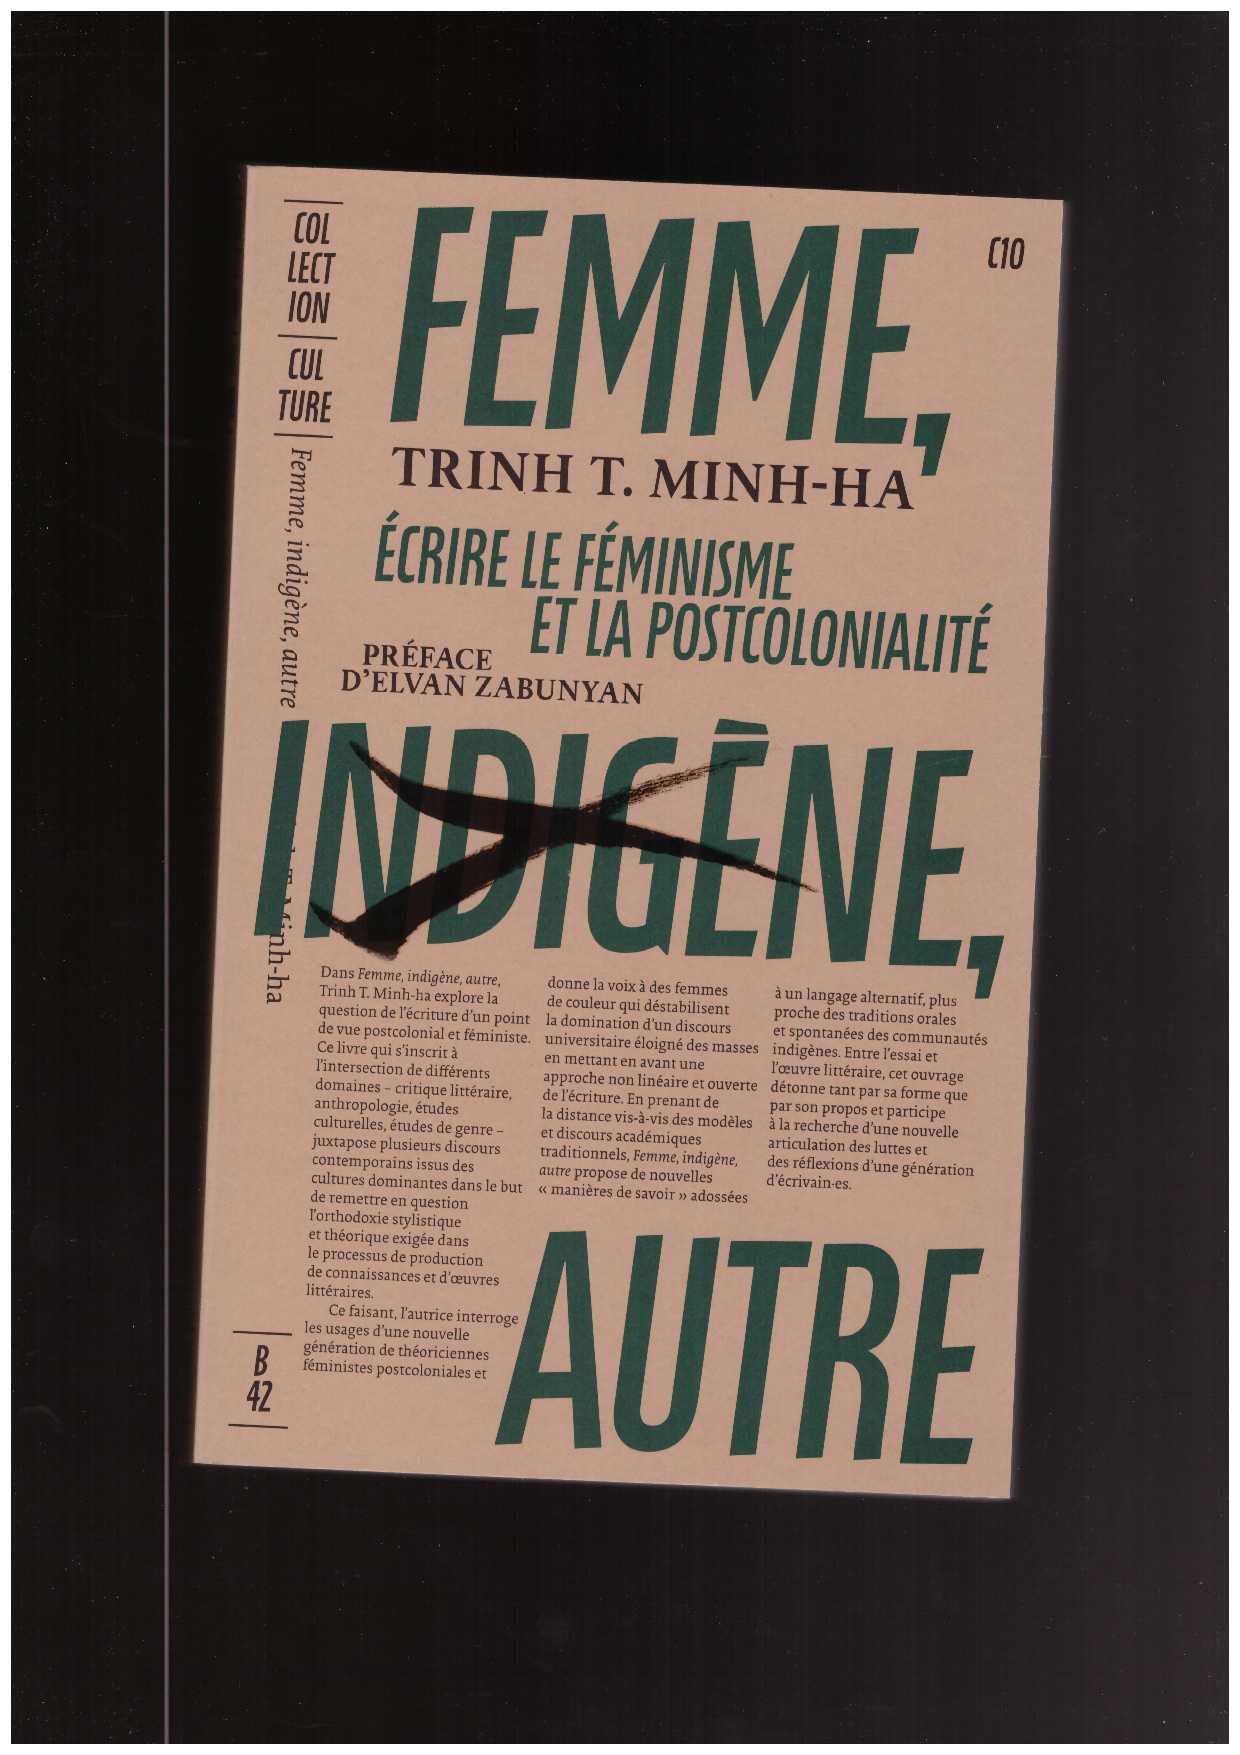 MINH-HA, Trinh T. - Femme, indigène, autre. Écrire le féminisme et la postcolonialité